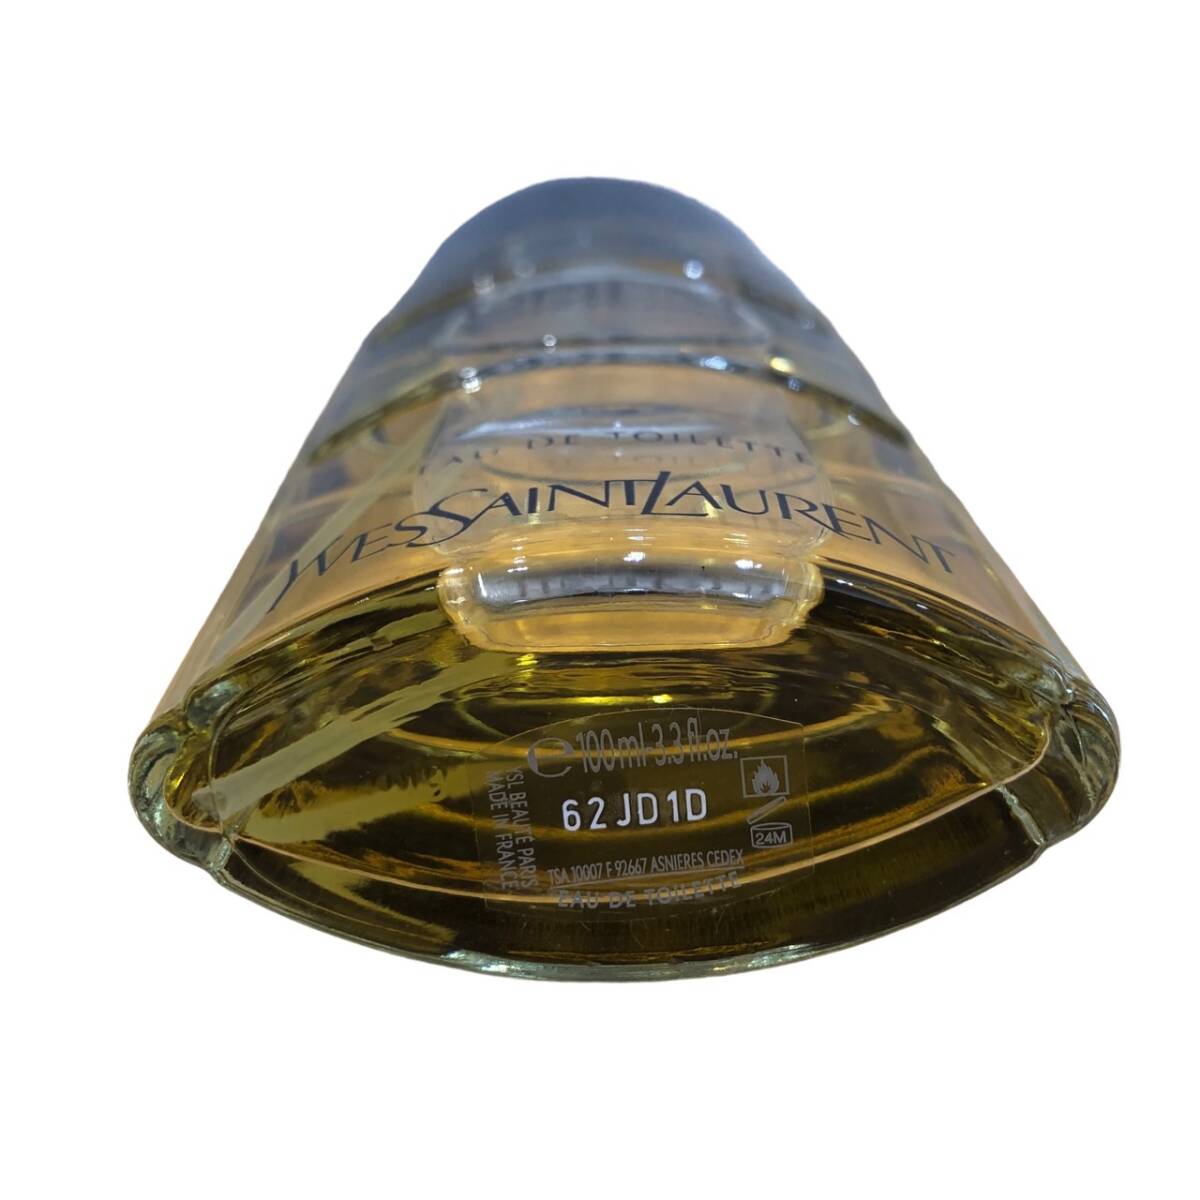 SAINT LAURENT サンローラン イブサンローラン オピウム オーデトワレ 100ml 残量9割以上 ほぼ満量 香水の画像2